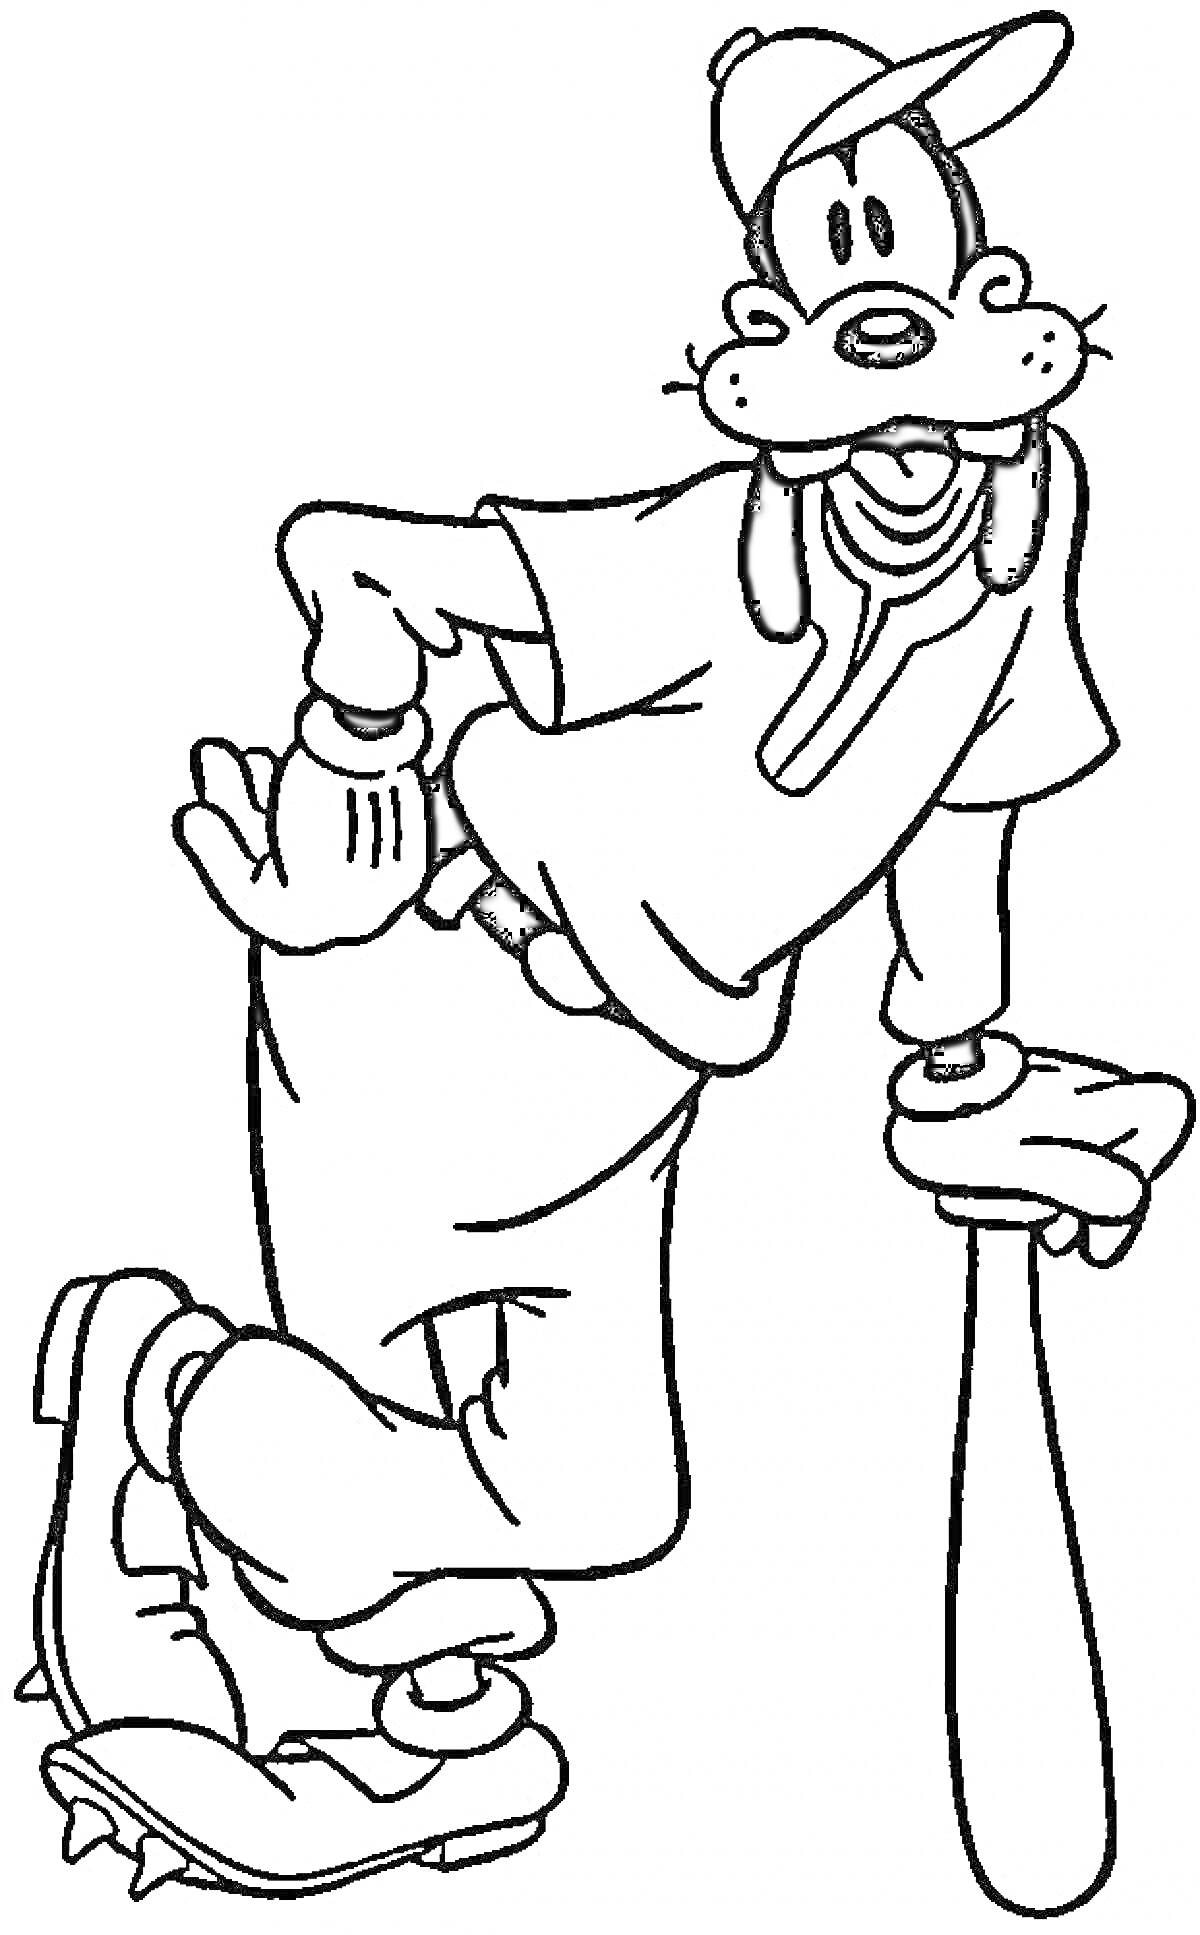 Раскраска Гуфи в бейсбольной форме с бейсбольной битой и перчаткой